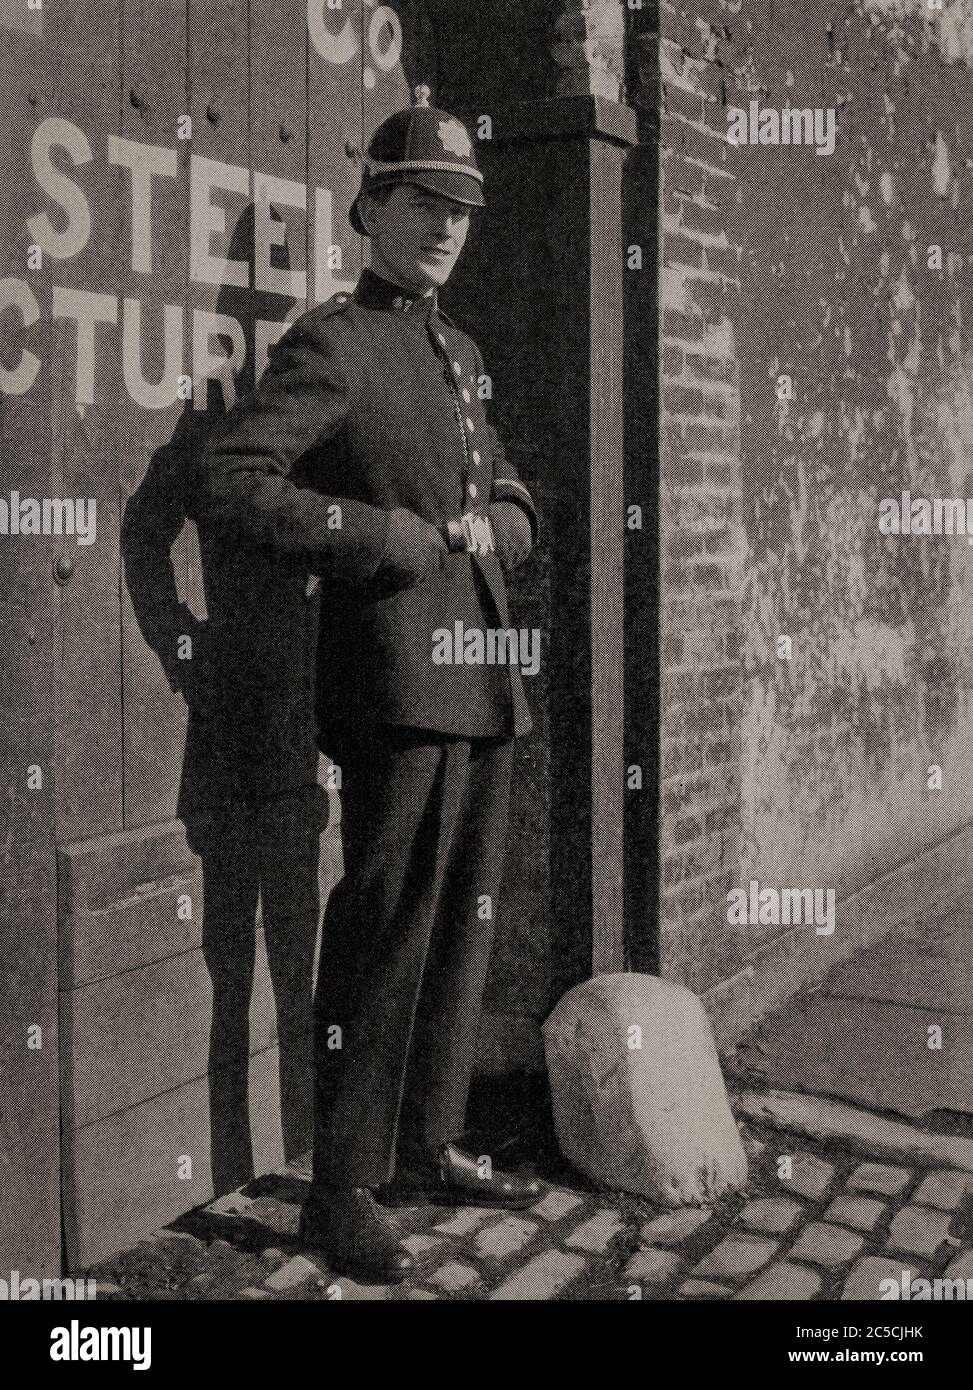 Portrait du début des années 1920 d'un membre de la Garde Siochana (police), avec casque à Cork. Initialement photographié par Clifton Adams (1890-1934) pour 'Ireland: The Rock Wharce I was hewn', un reportage du magazine National Geographic de mars 1927. Banque D'Images